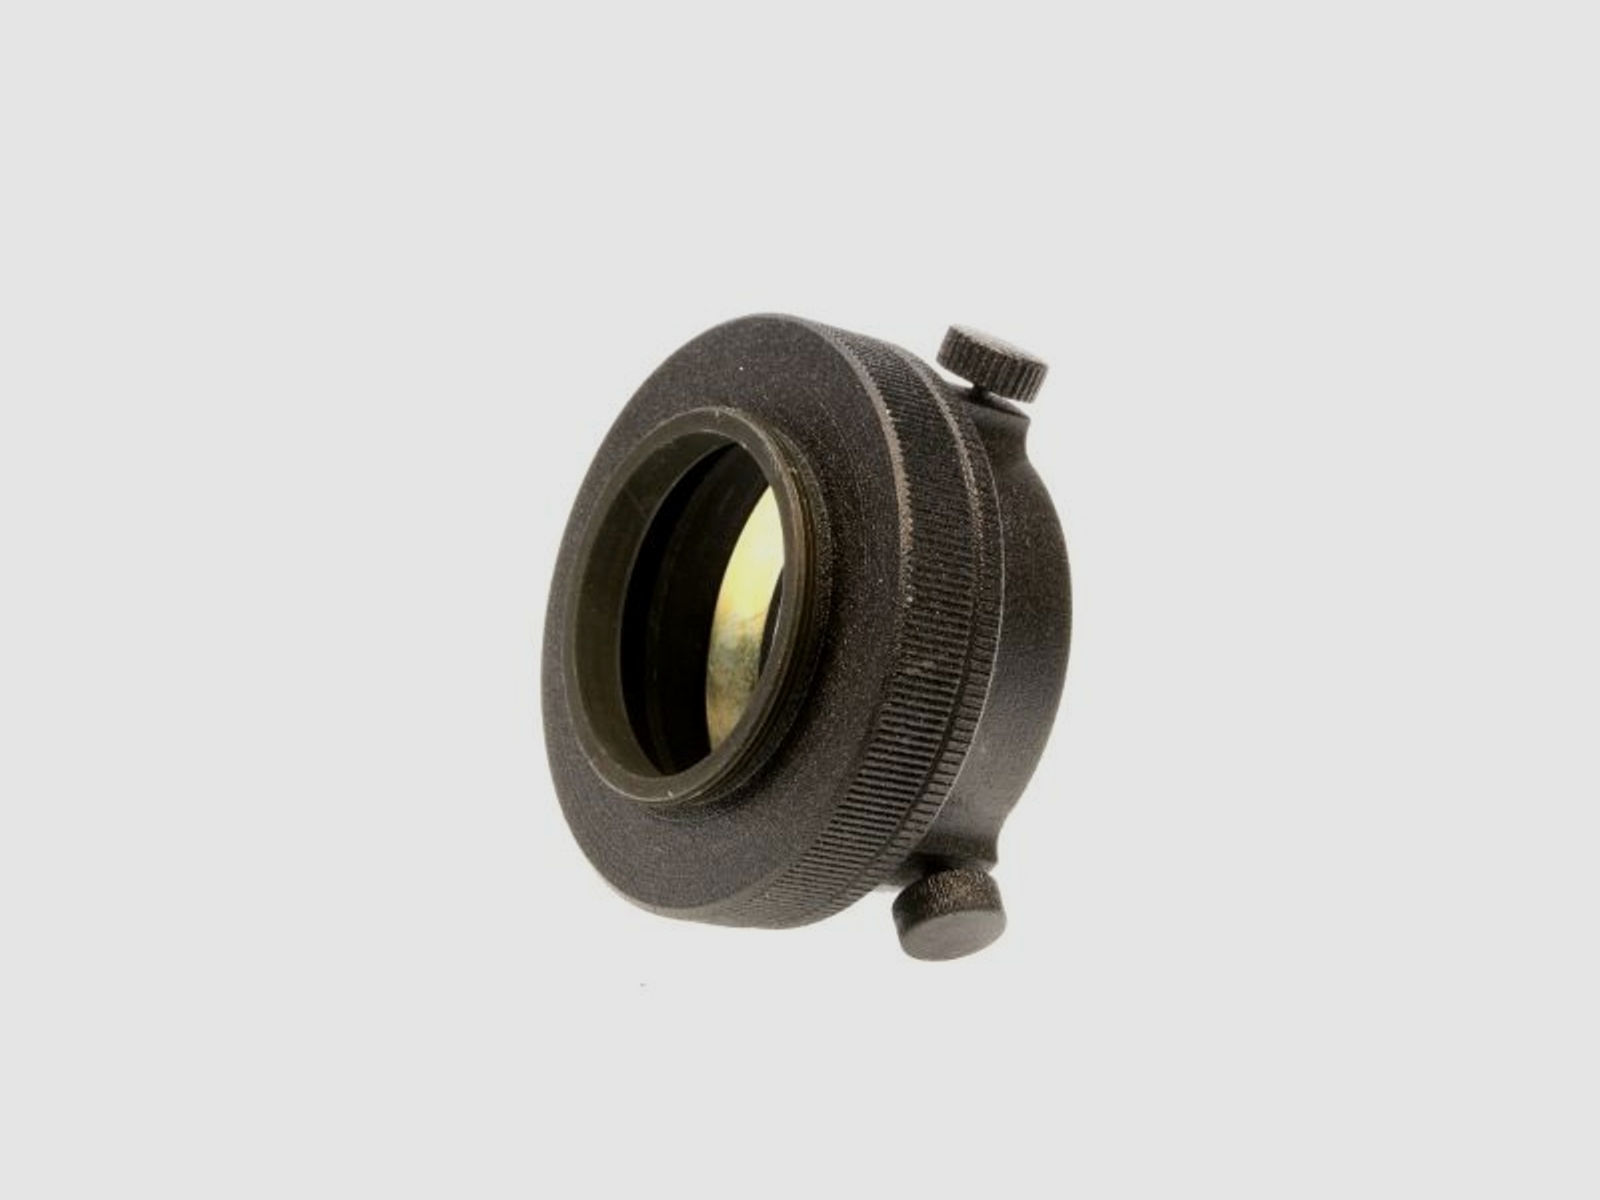 ATN Kamera Adapter M42-T2 für Nachtsichtgerät